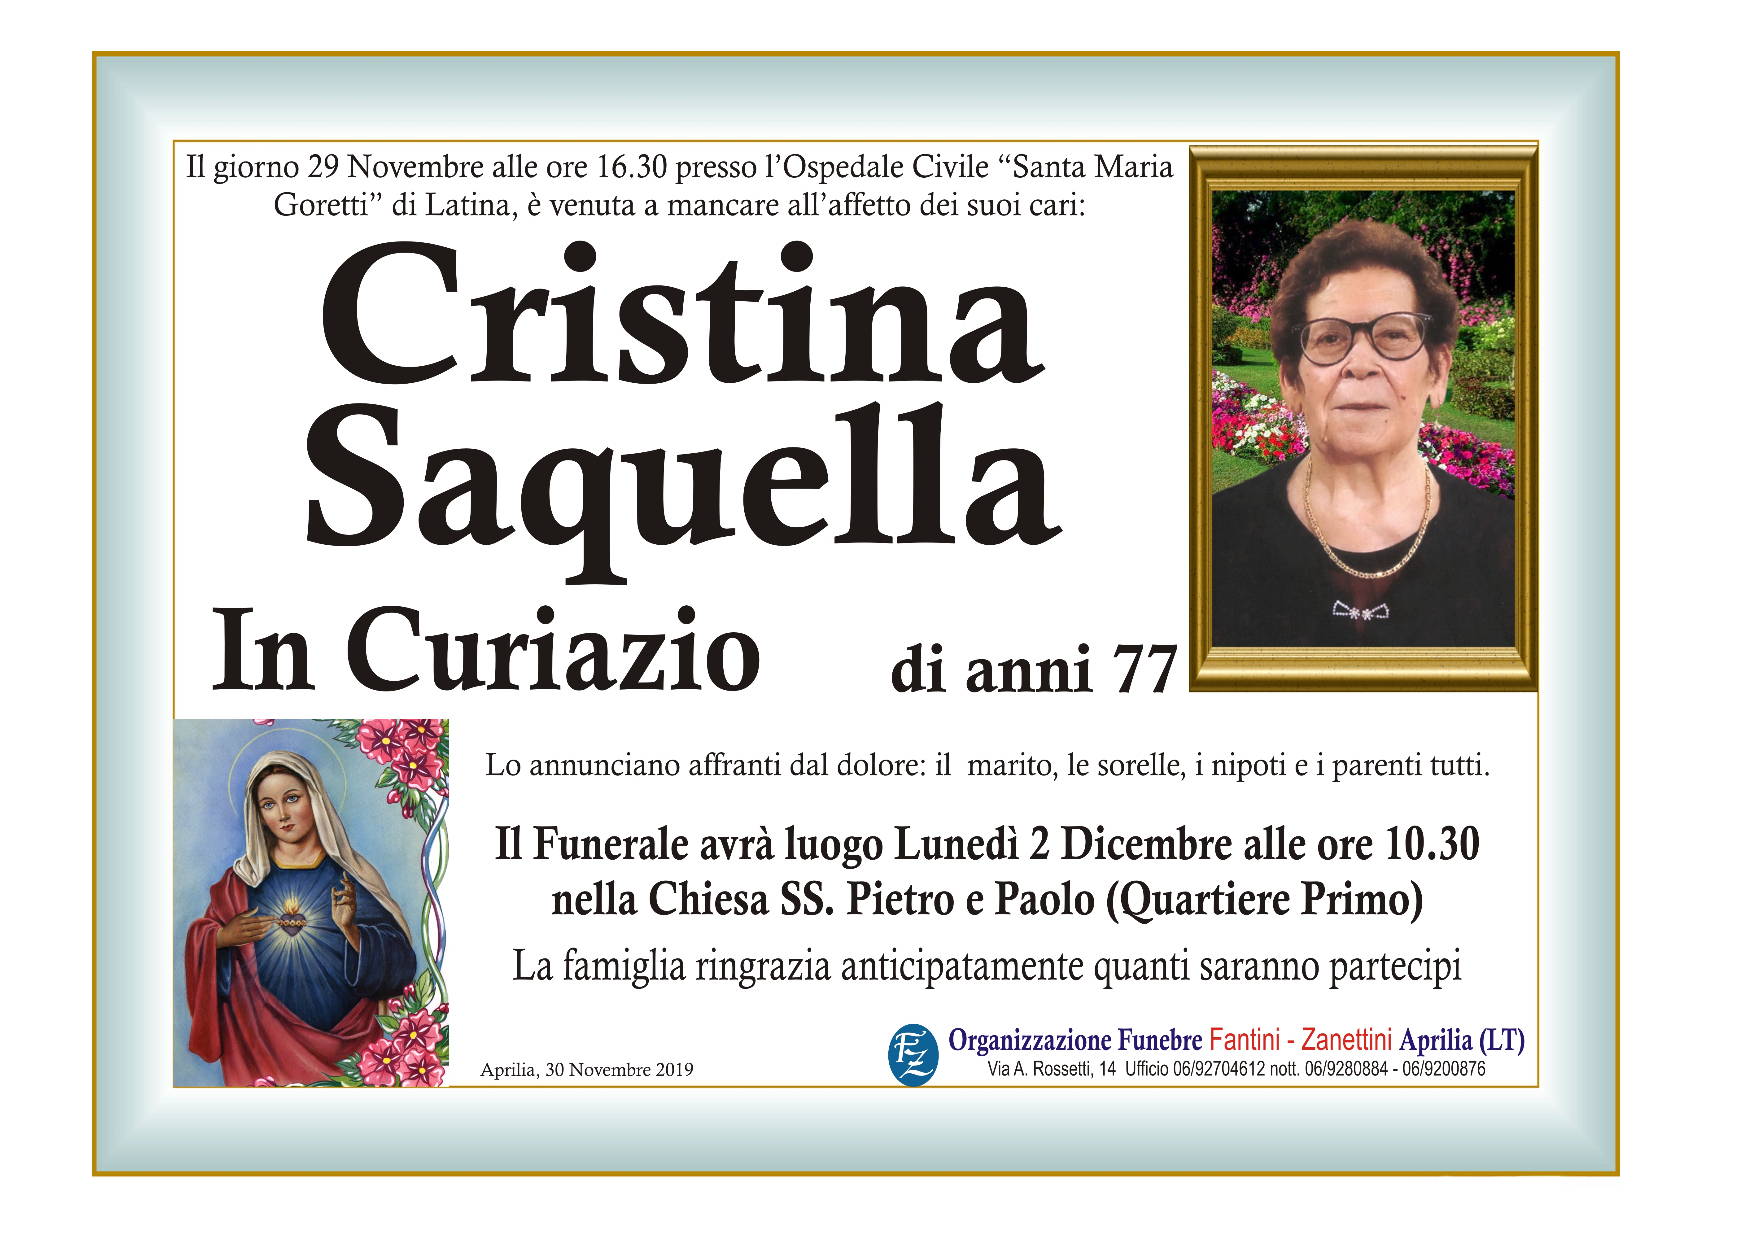 Cristina Saquella